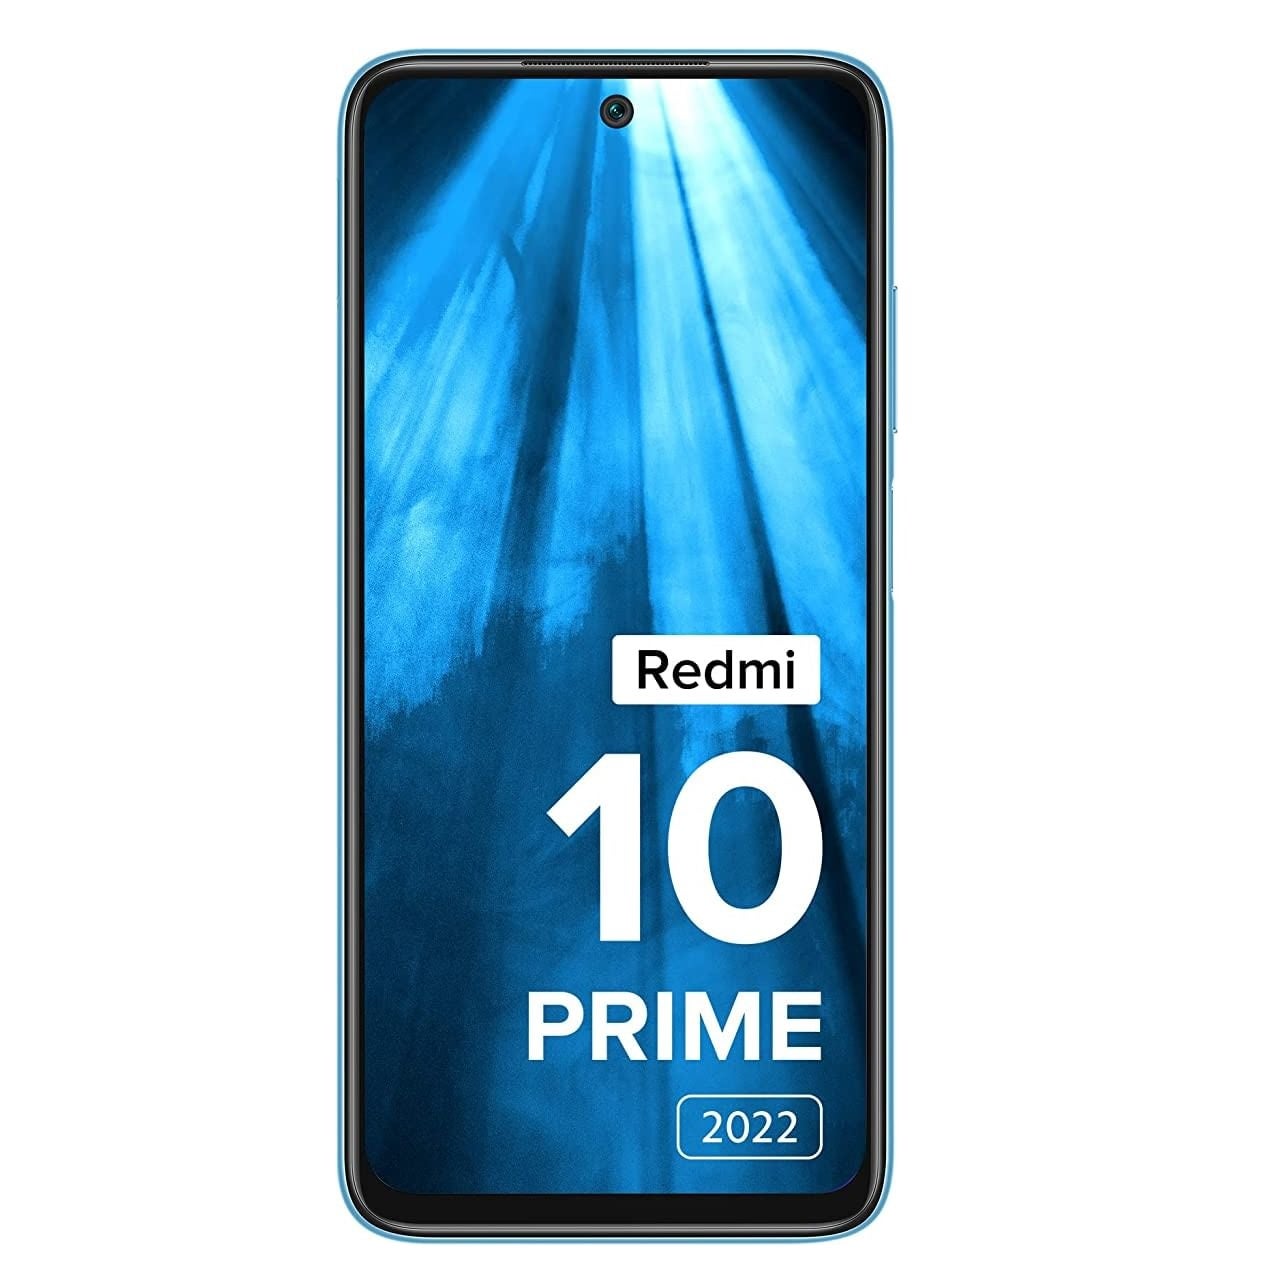 Xiaomi Redmi 10 Prime 2022 4G Mobile Phone